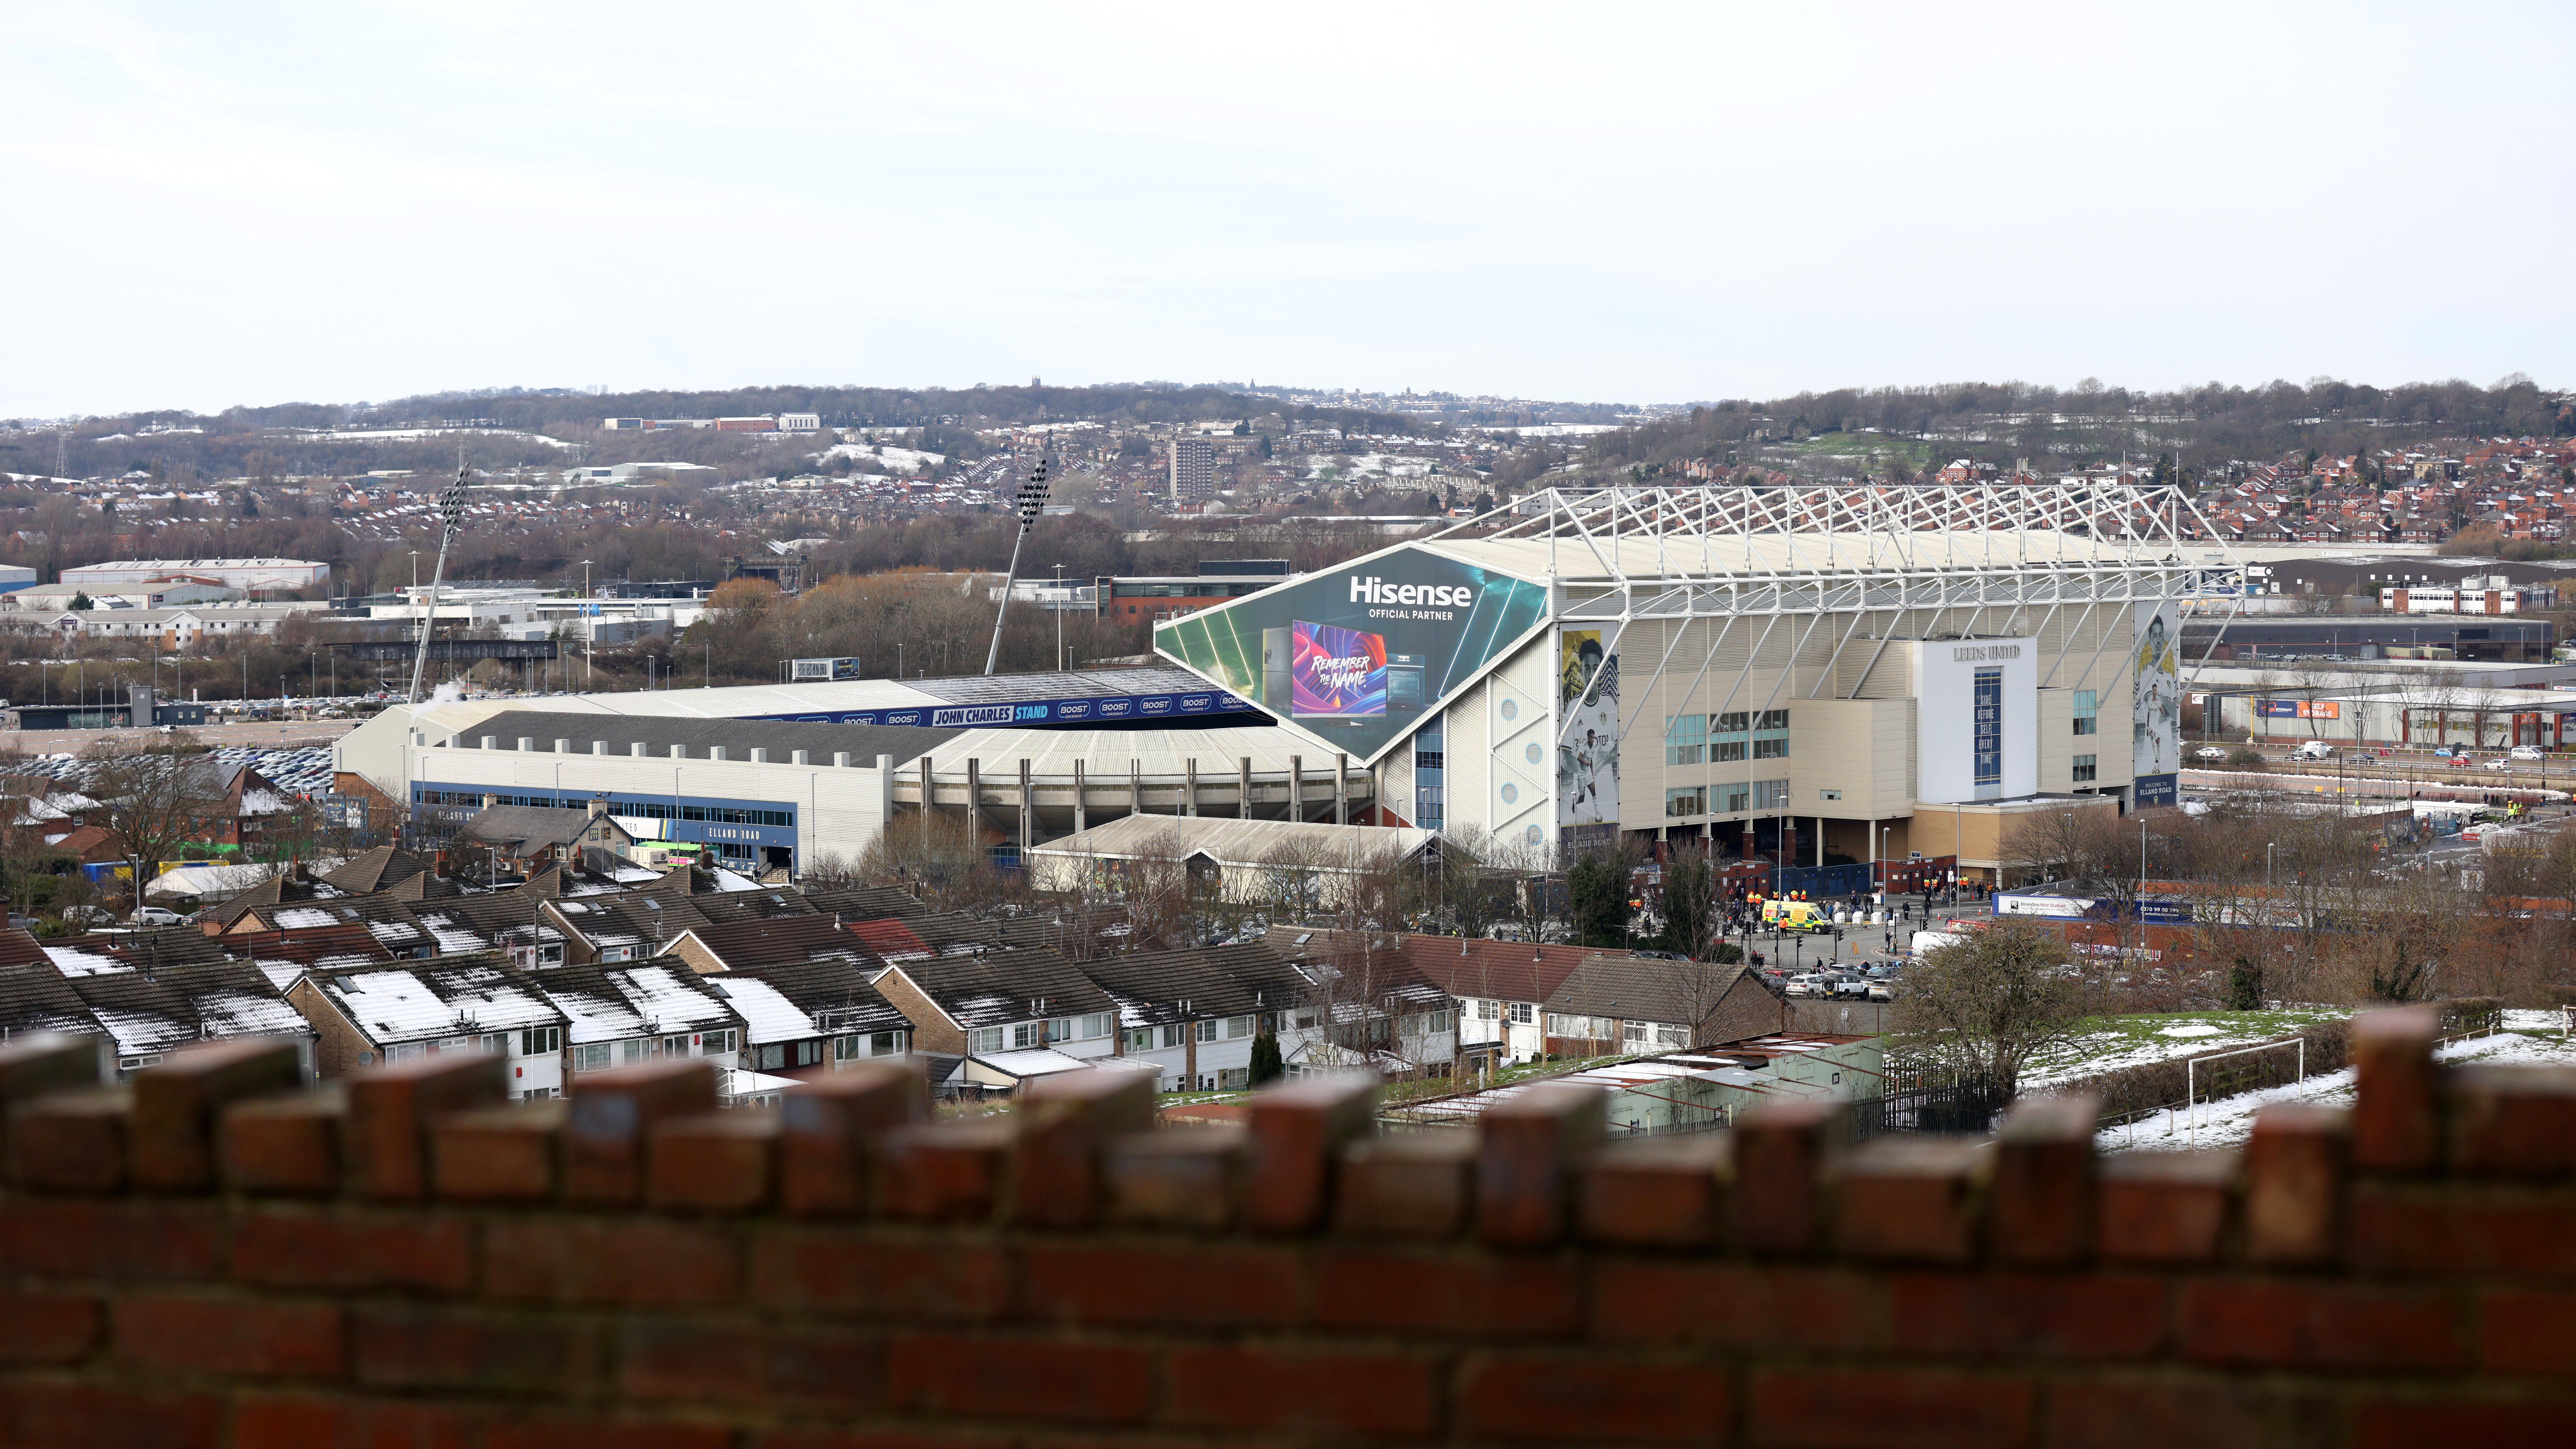 Megfenyegették a Premier League-csapatot, a rendőrség bezárta a stadiont